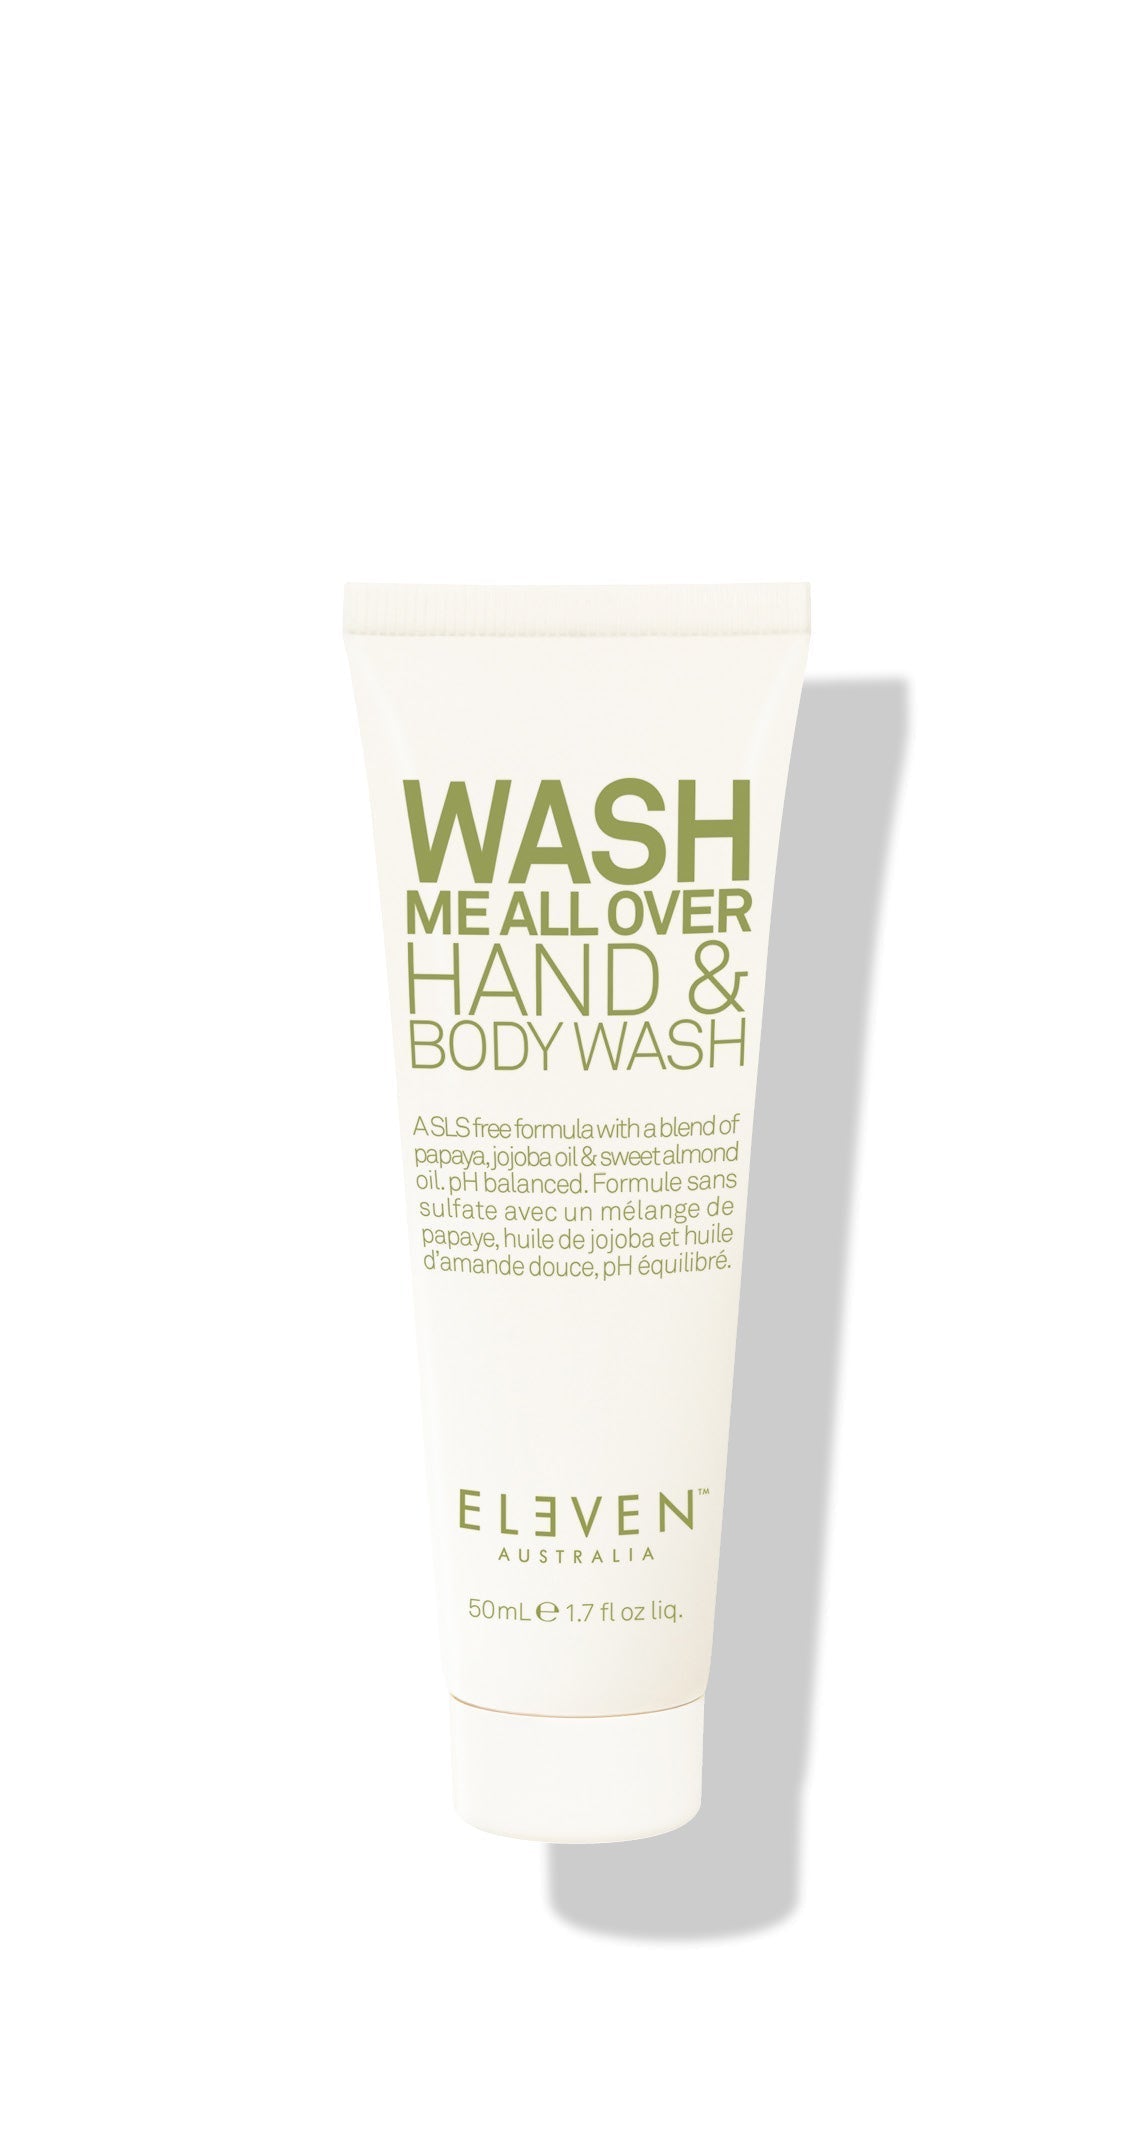 Wash Me All Over Hand & Body Wash - 50ml - ELEVEN Australia